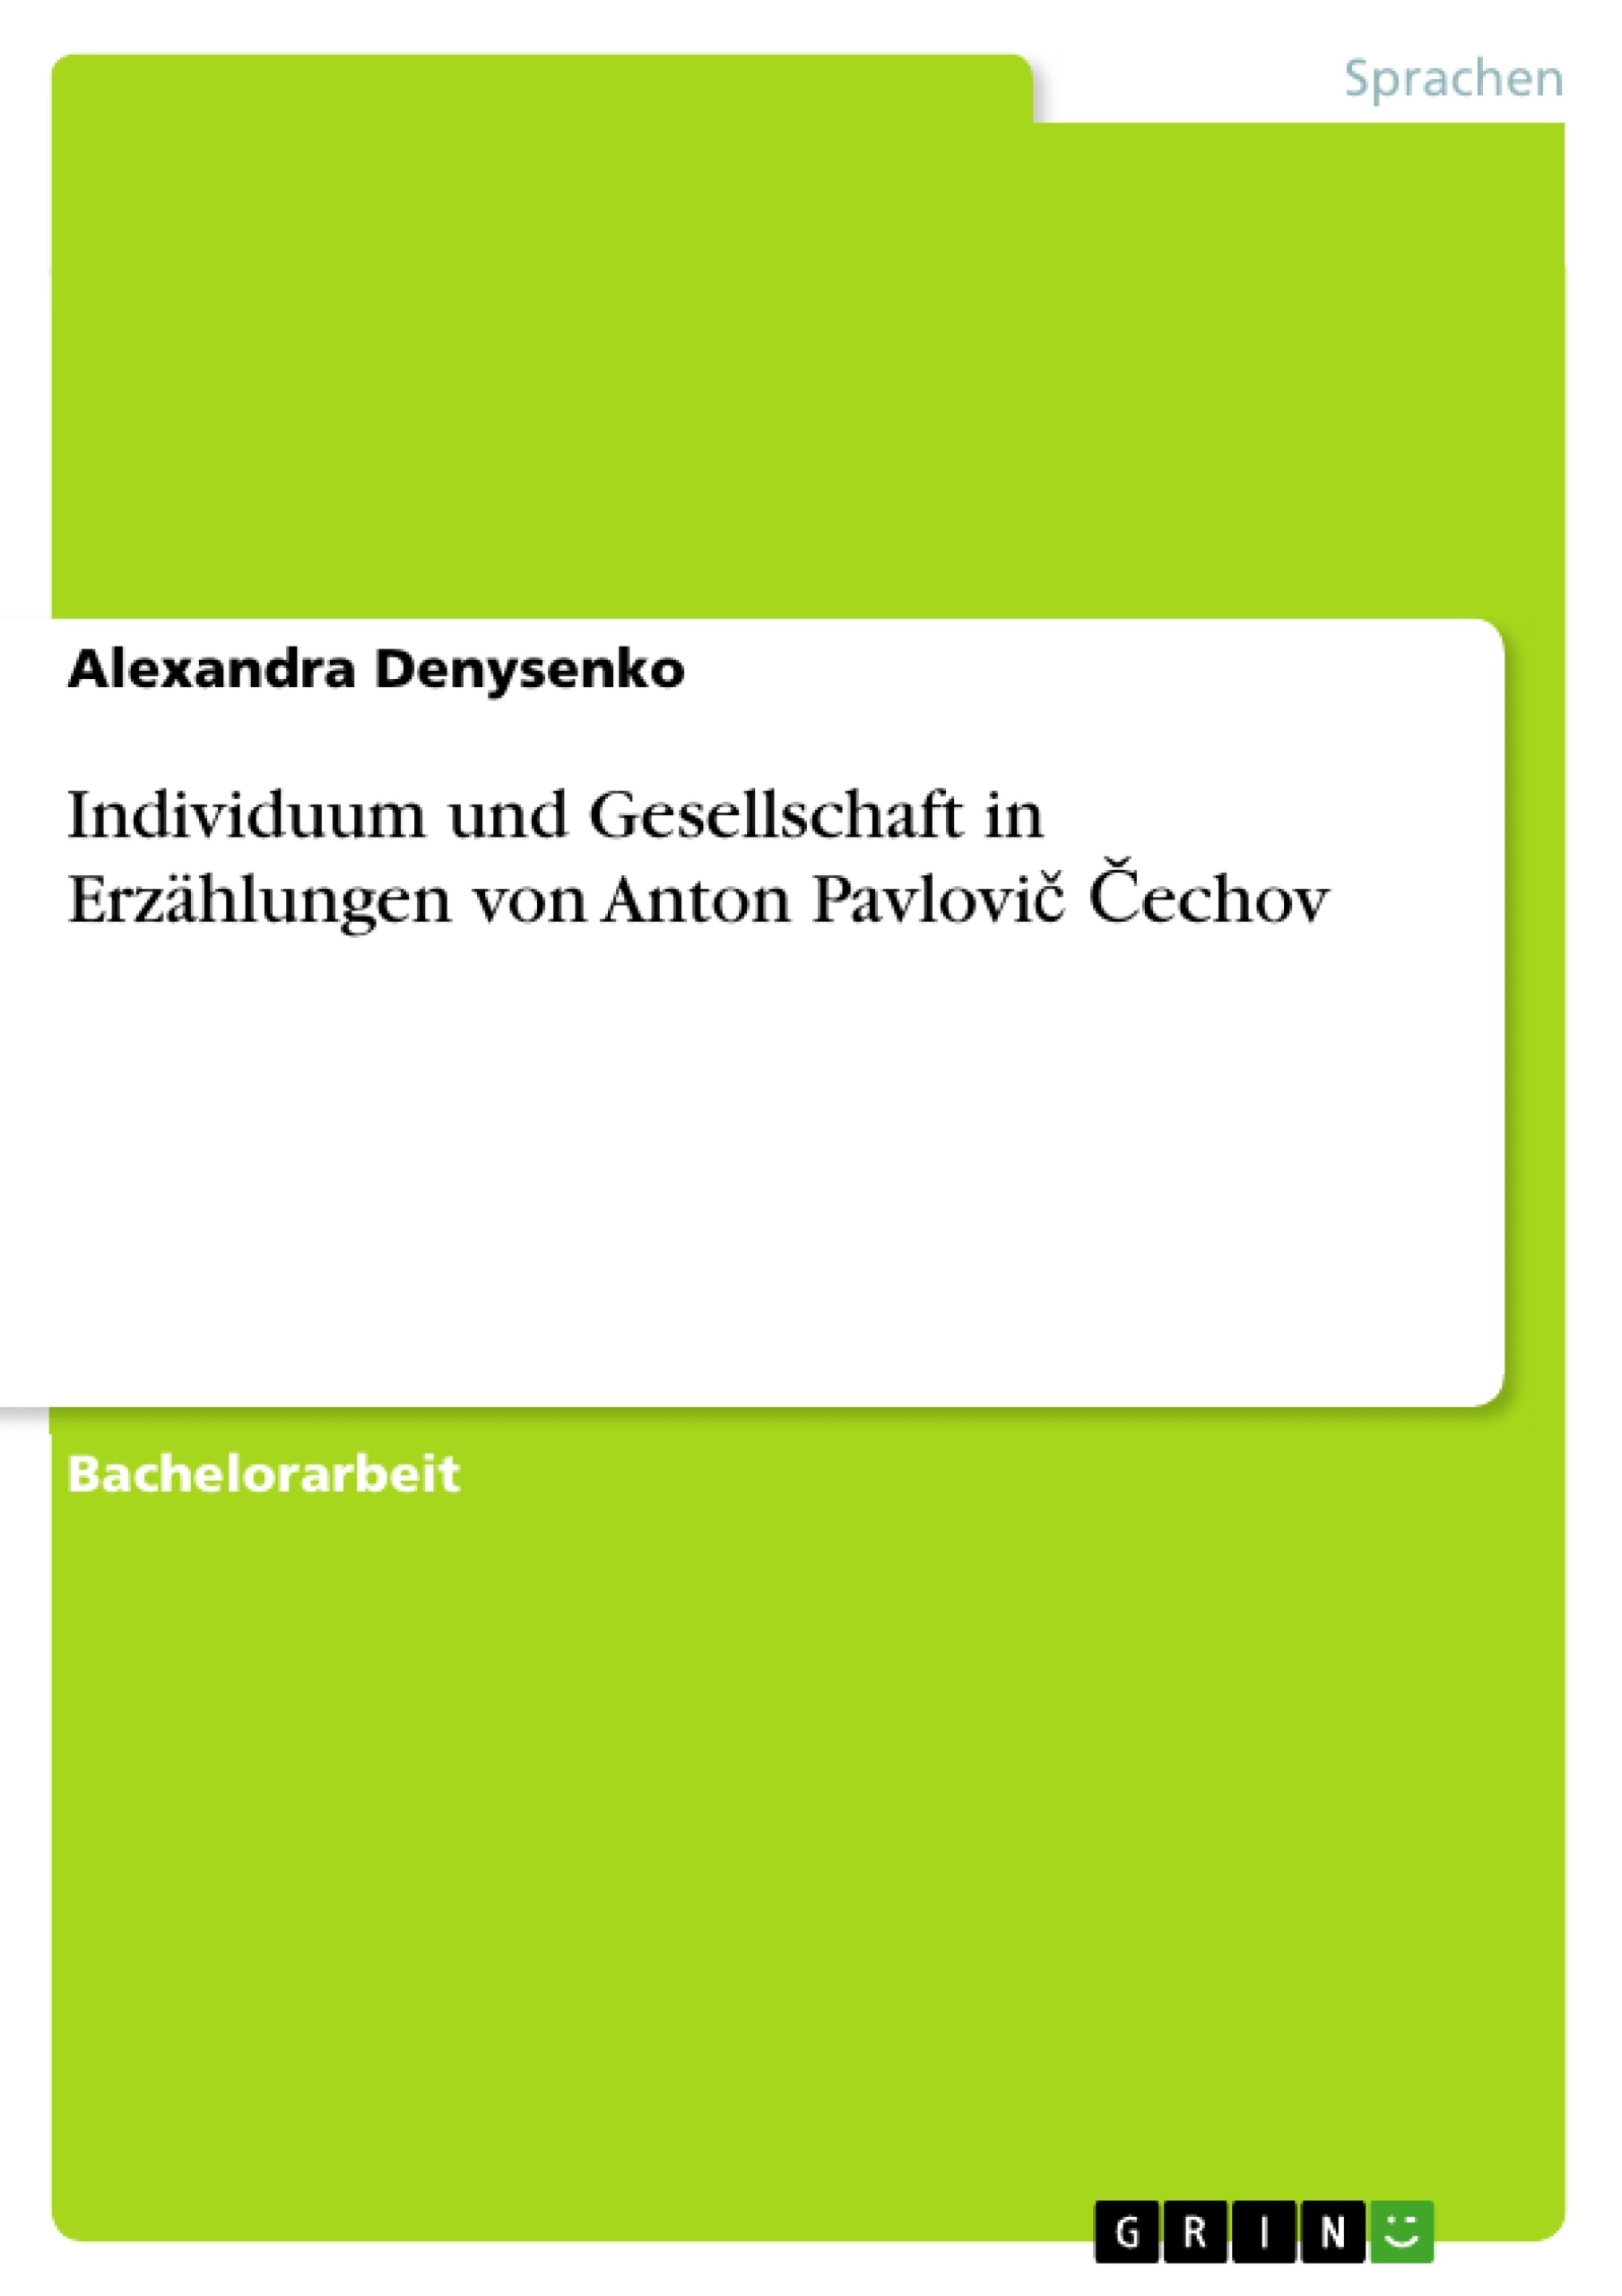 Title: Individuum und Gesellschaft in Erzählungen von Anton Pavlovič Čechov